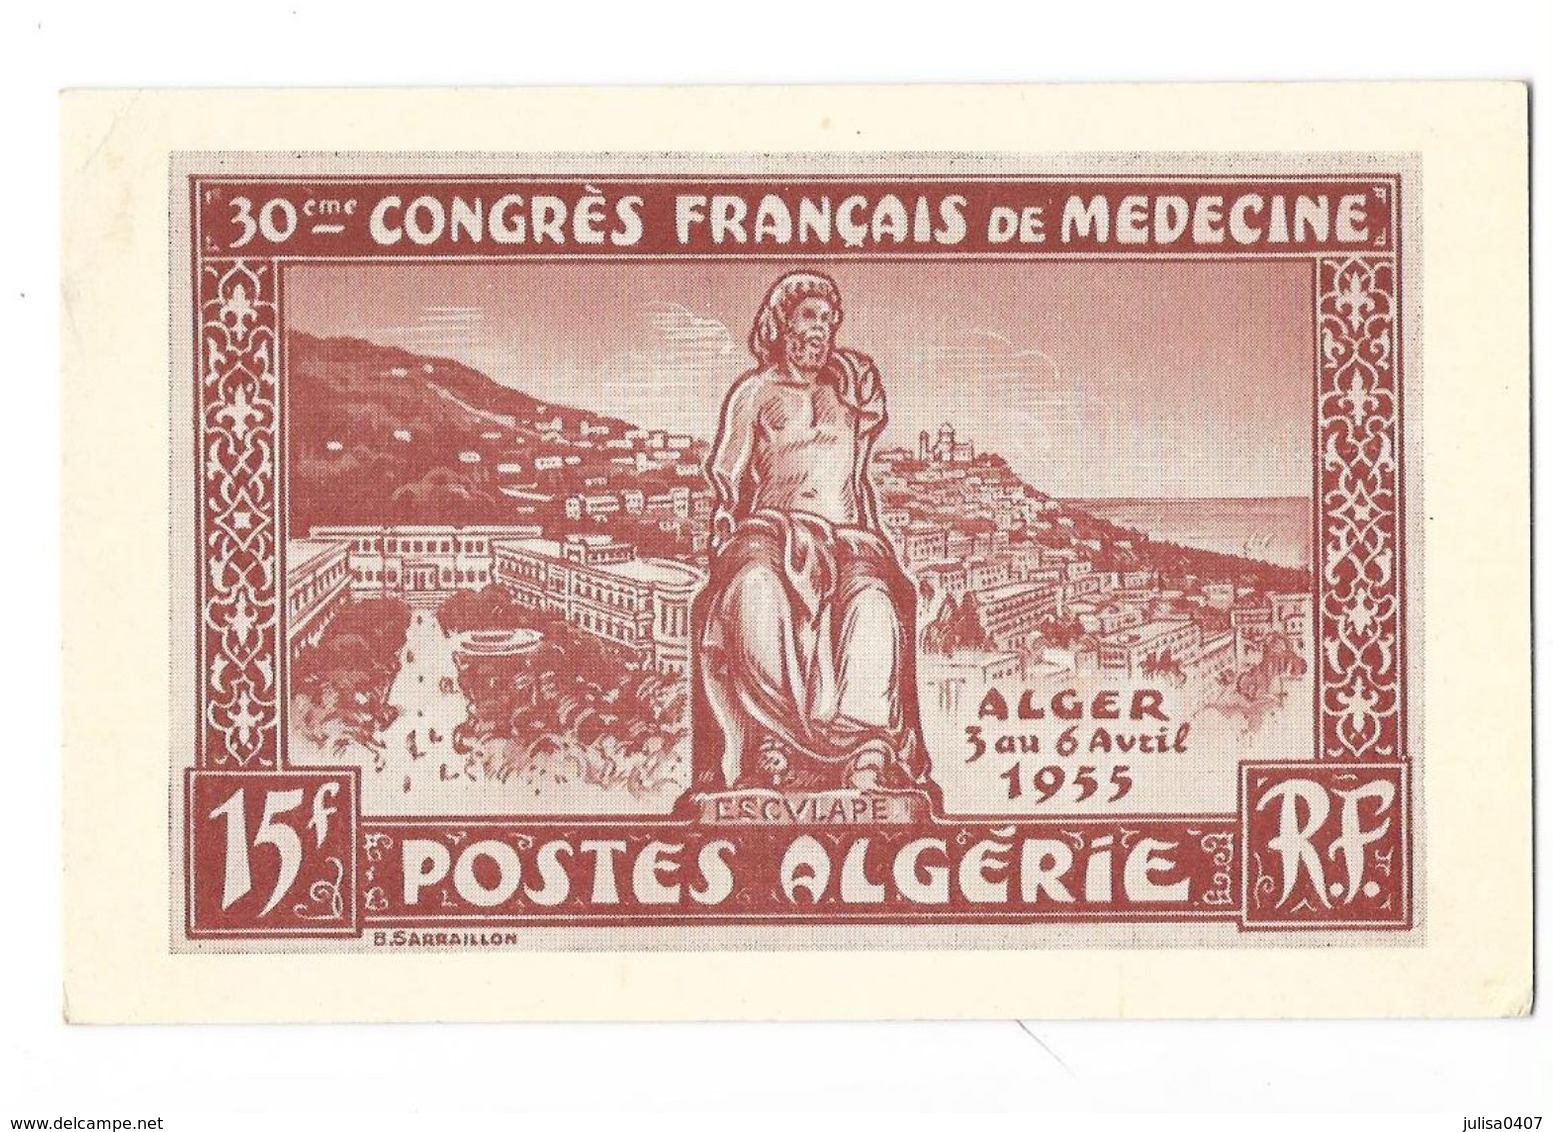 ALGER (Algérie) Carte Illustrée 30ème Congrès Français De Medecine 1955 - Algiers